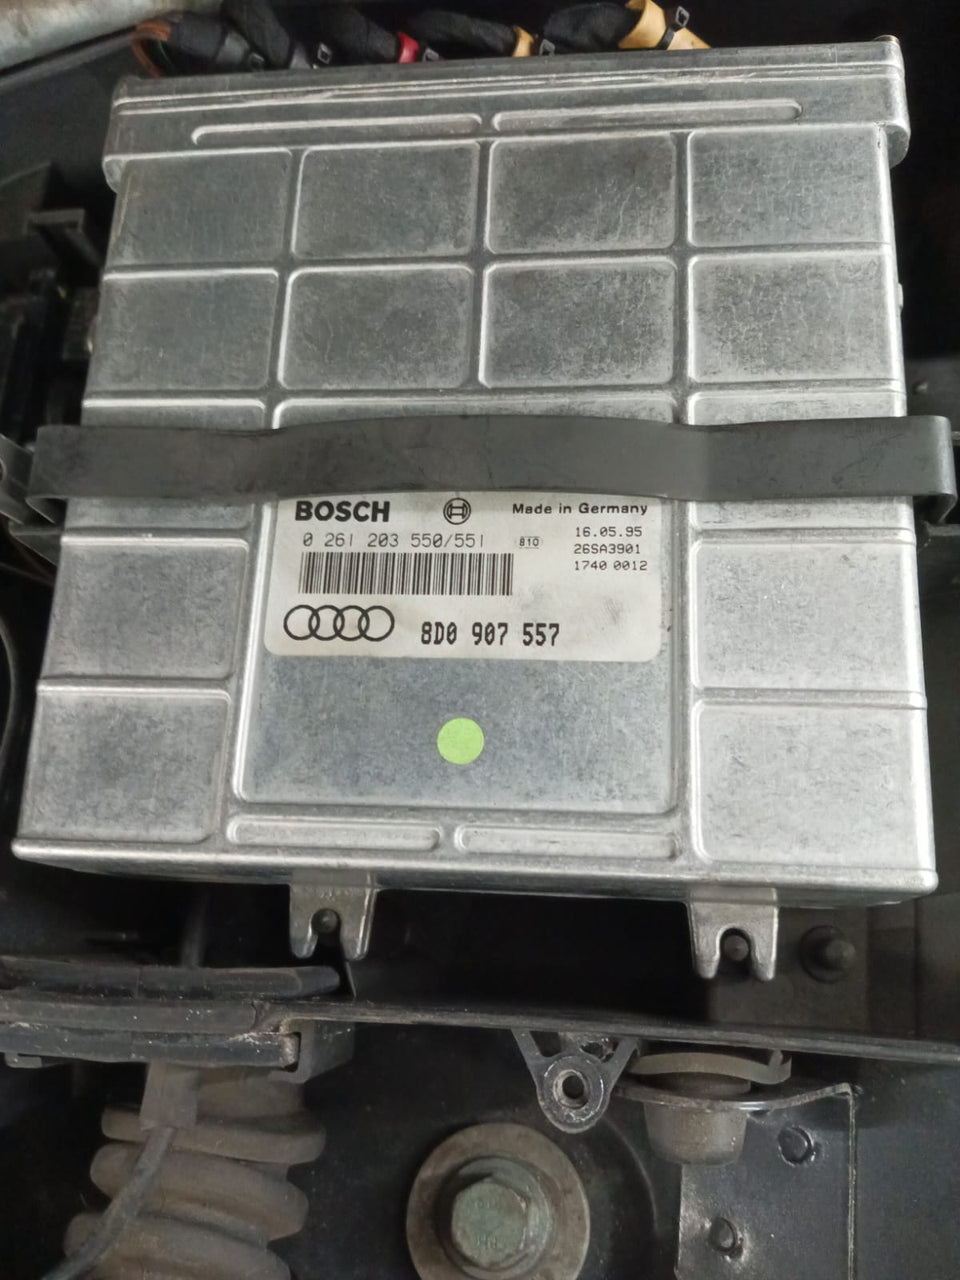 Audi A4 1.8t 0261203550-551 8D0907557 IMMO OFF